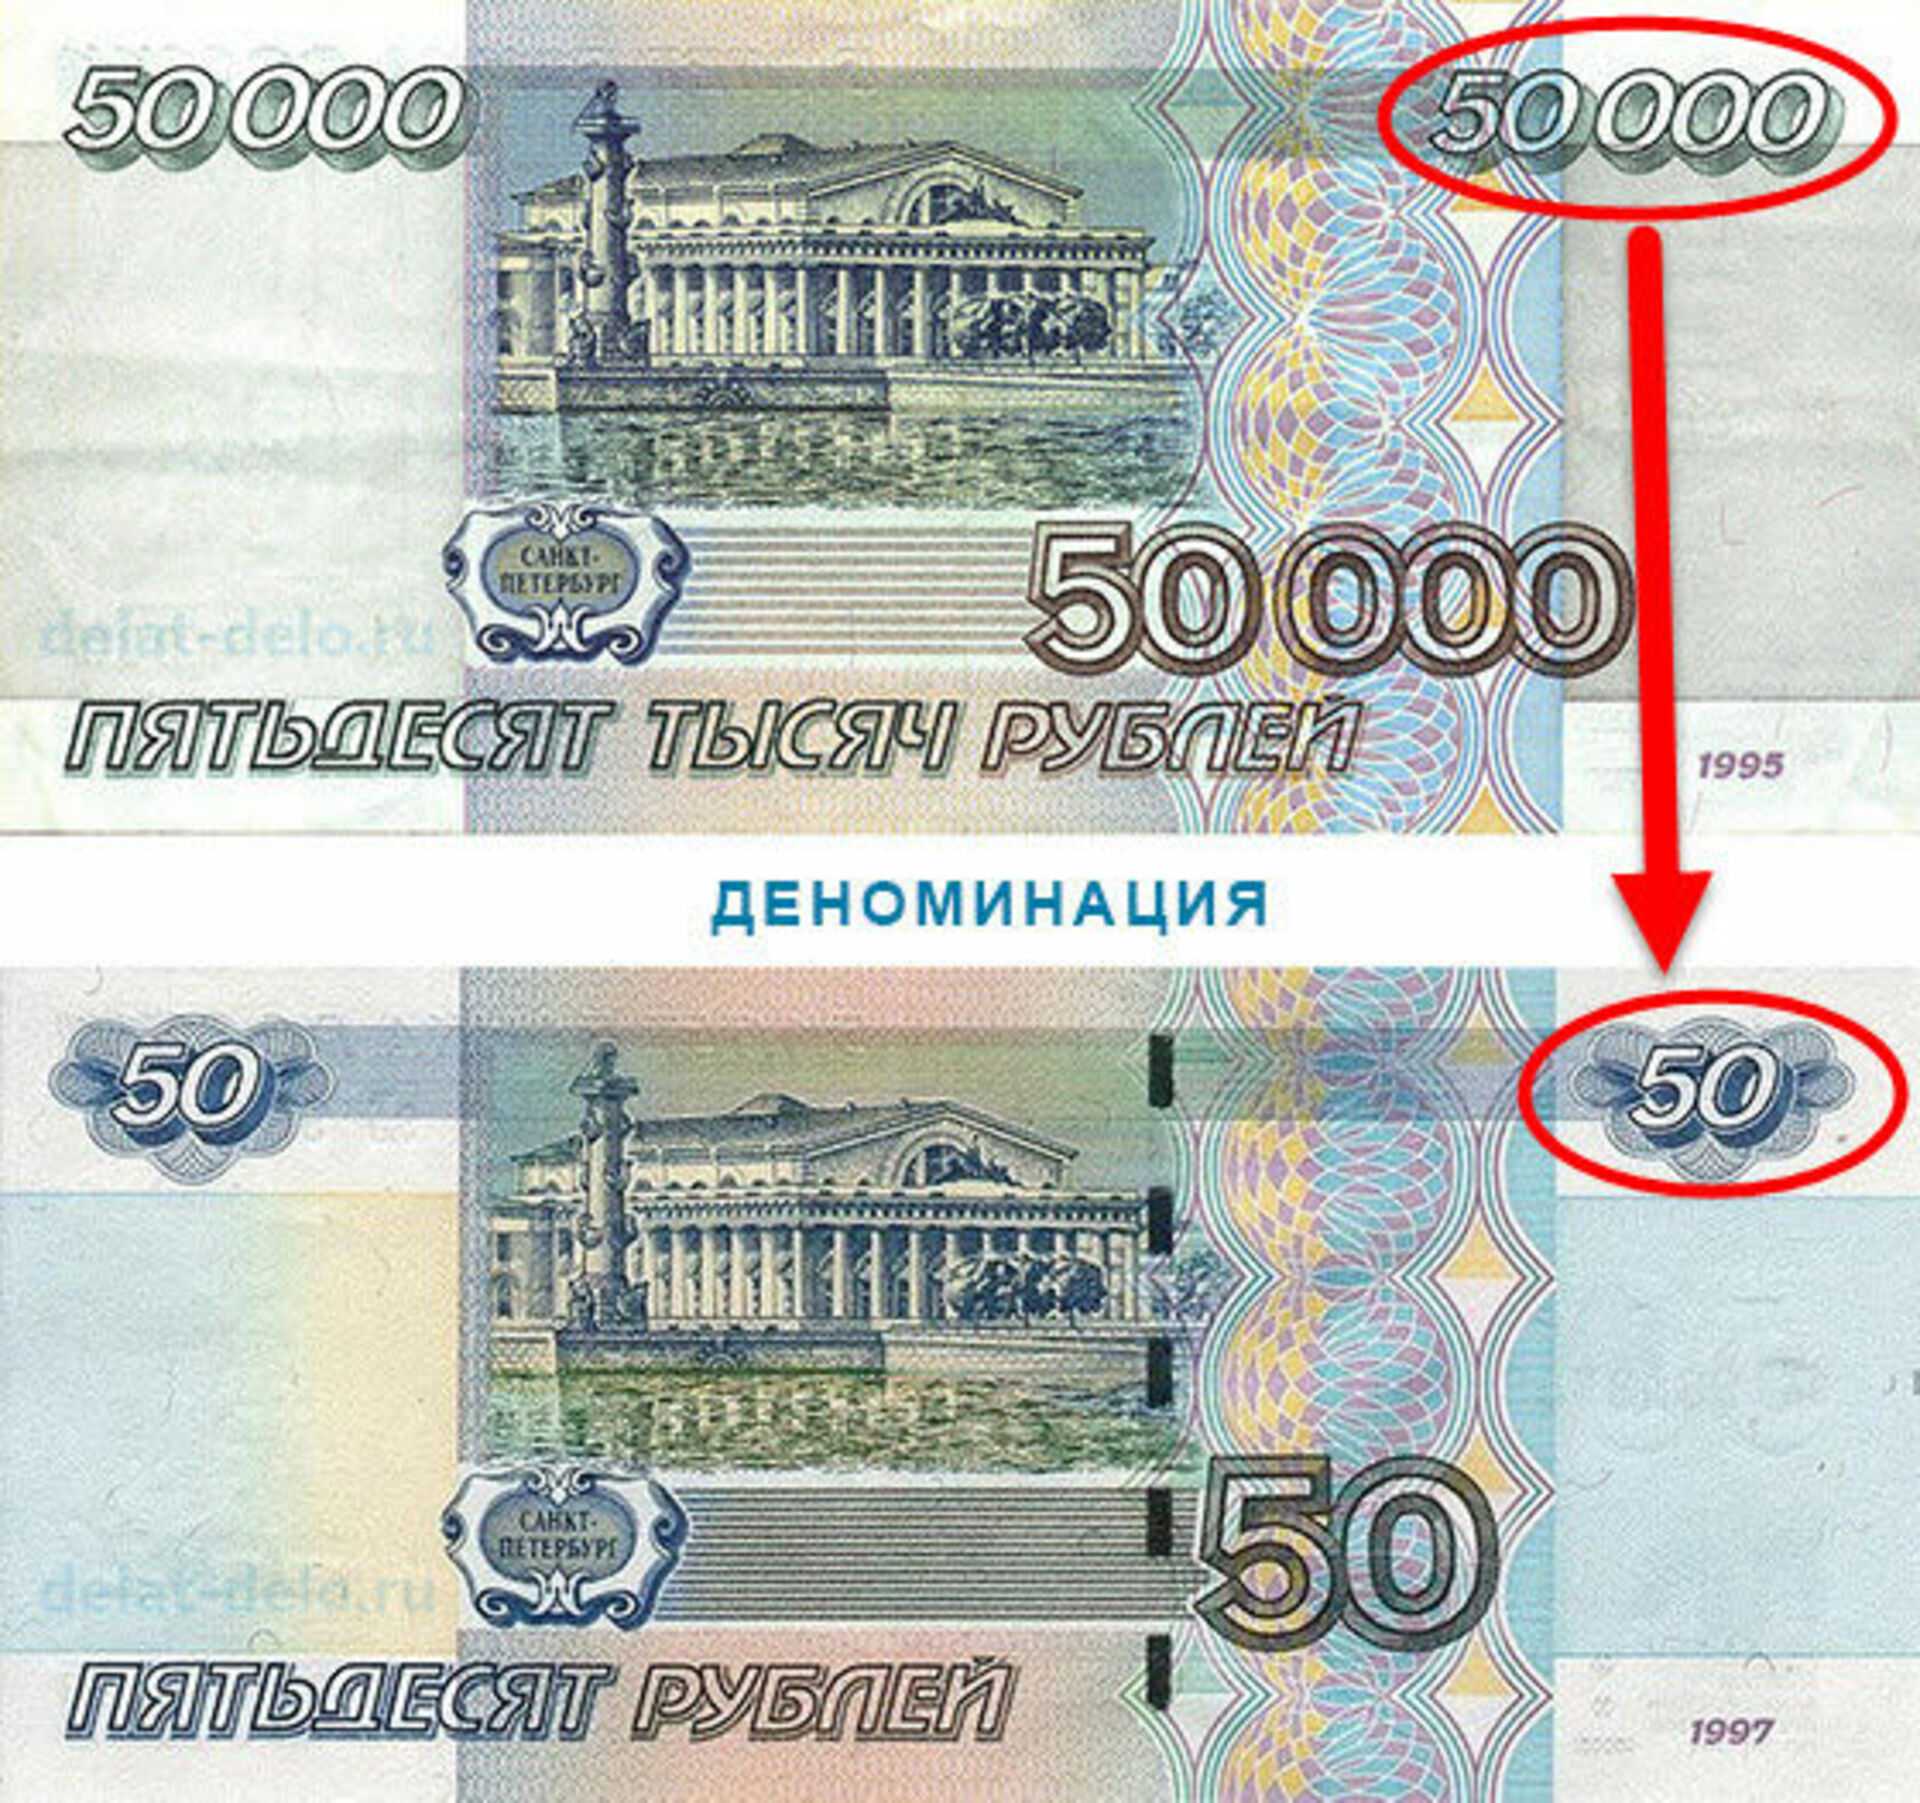 Рубли поменяются. Деноминация в России в 1998. Деноминация в России в 1998 деньги. Деноминация рубля в 1998 году в России. Деноминация 1998 купюры.